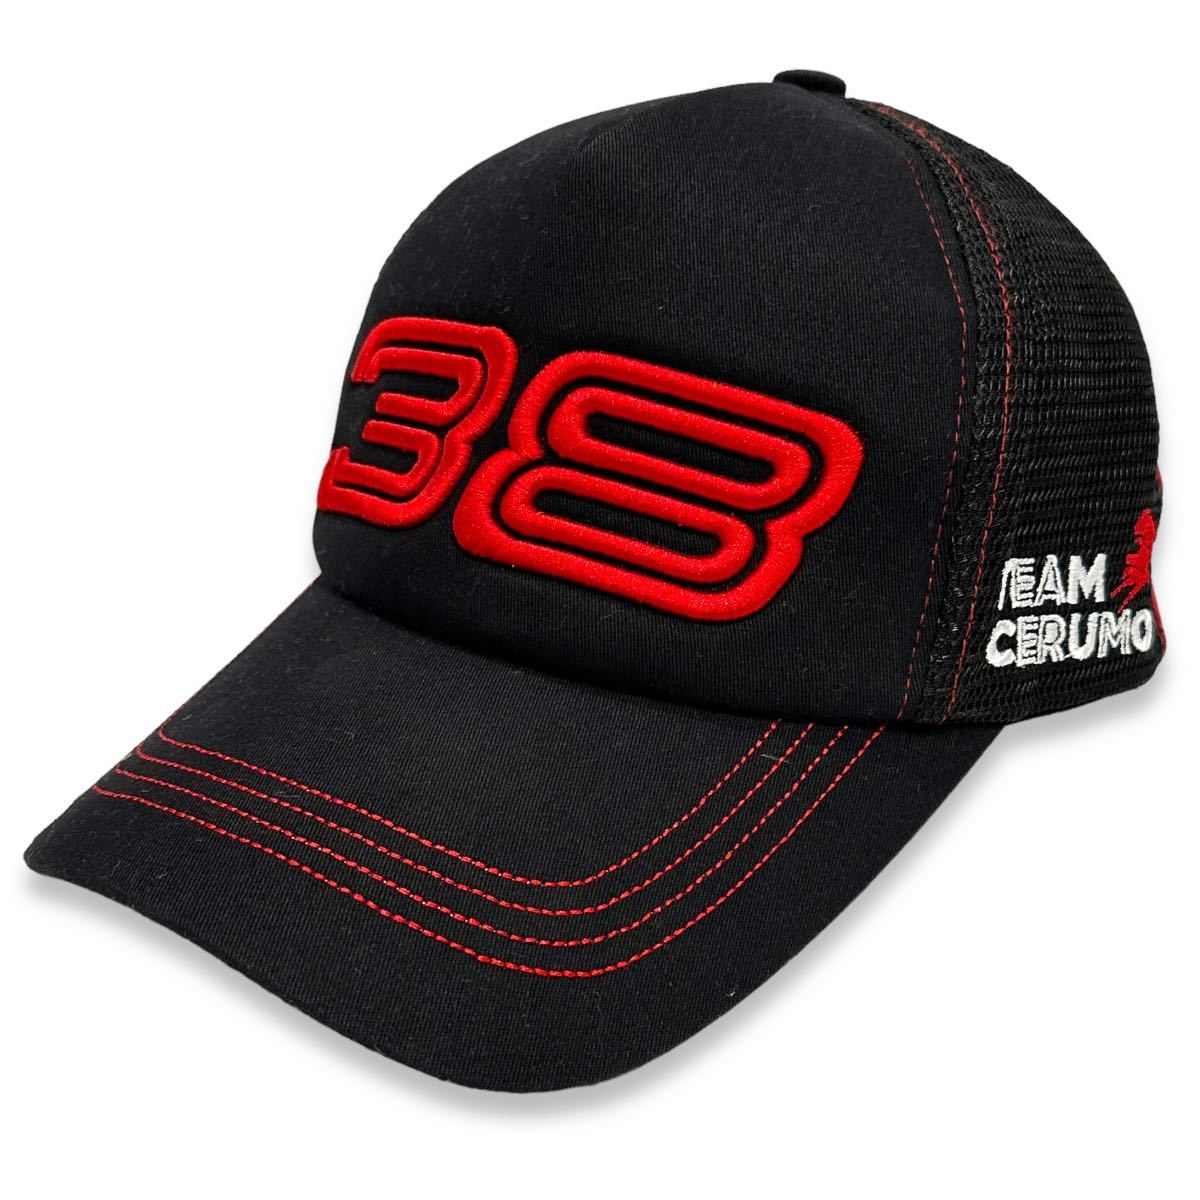  редкостный # TGR TEAM ZENT CERMO ( команда zento CERUMO ) официальный Logo 38 number кольцо вышивка сетчатая кепка чёрный красный черный / красный 